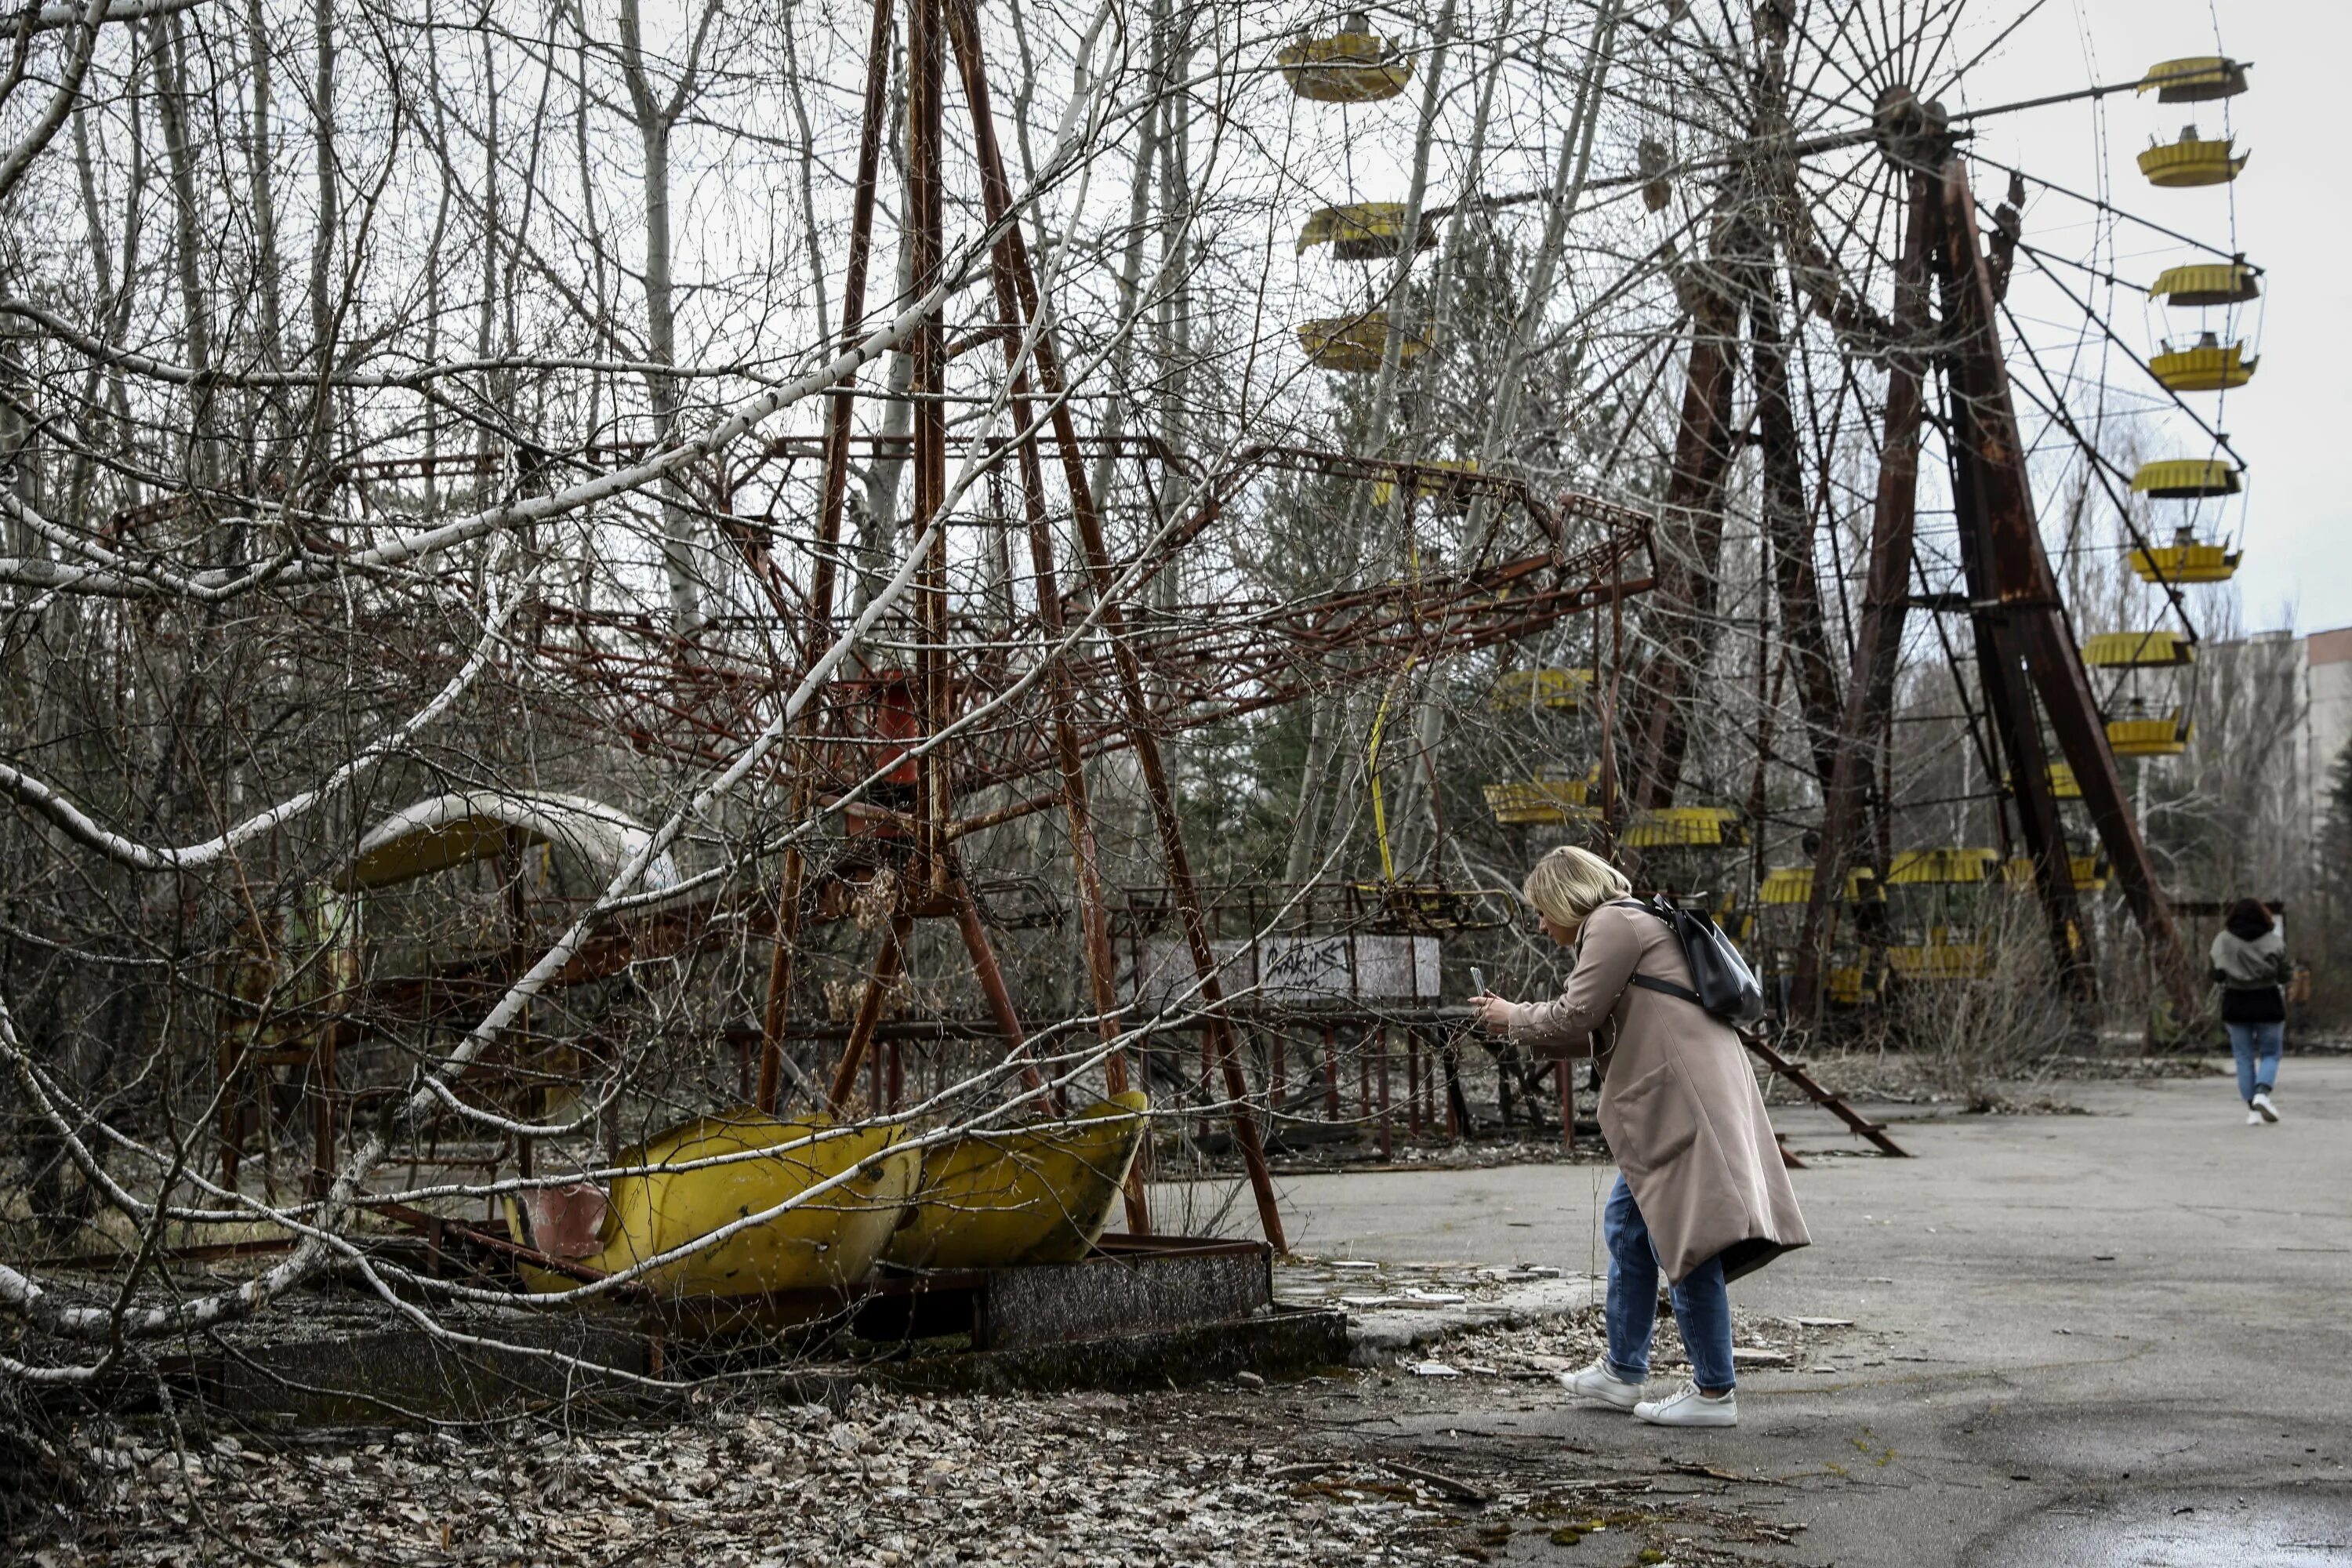 Чернобыль Припять 2021. Чернобыль город Припять 2022. Припять зона отчуждения 2021. Чернобыль город Припять после аварии.